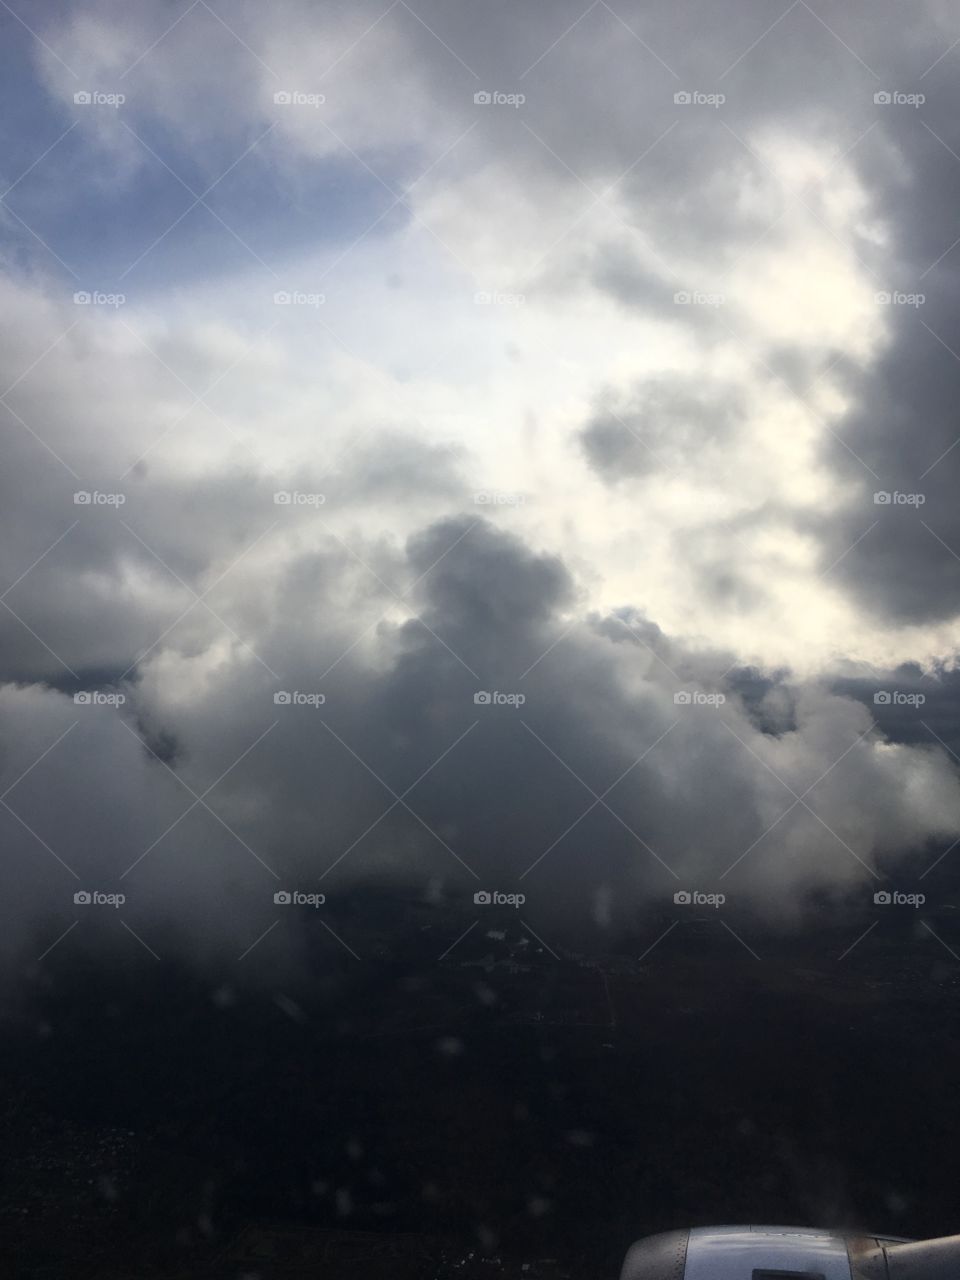 Airplane clouds rain 